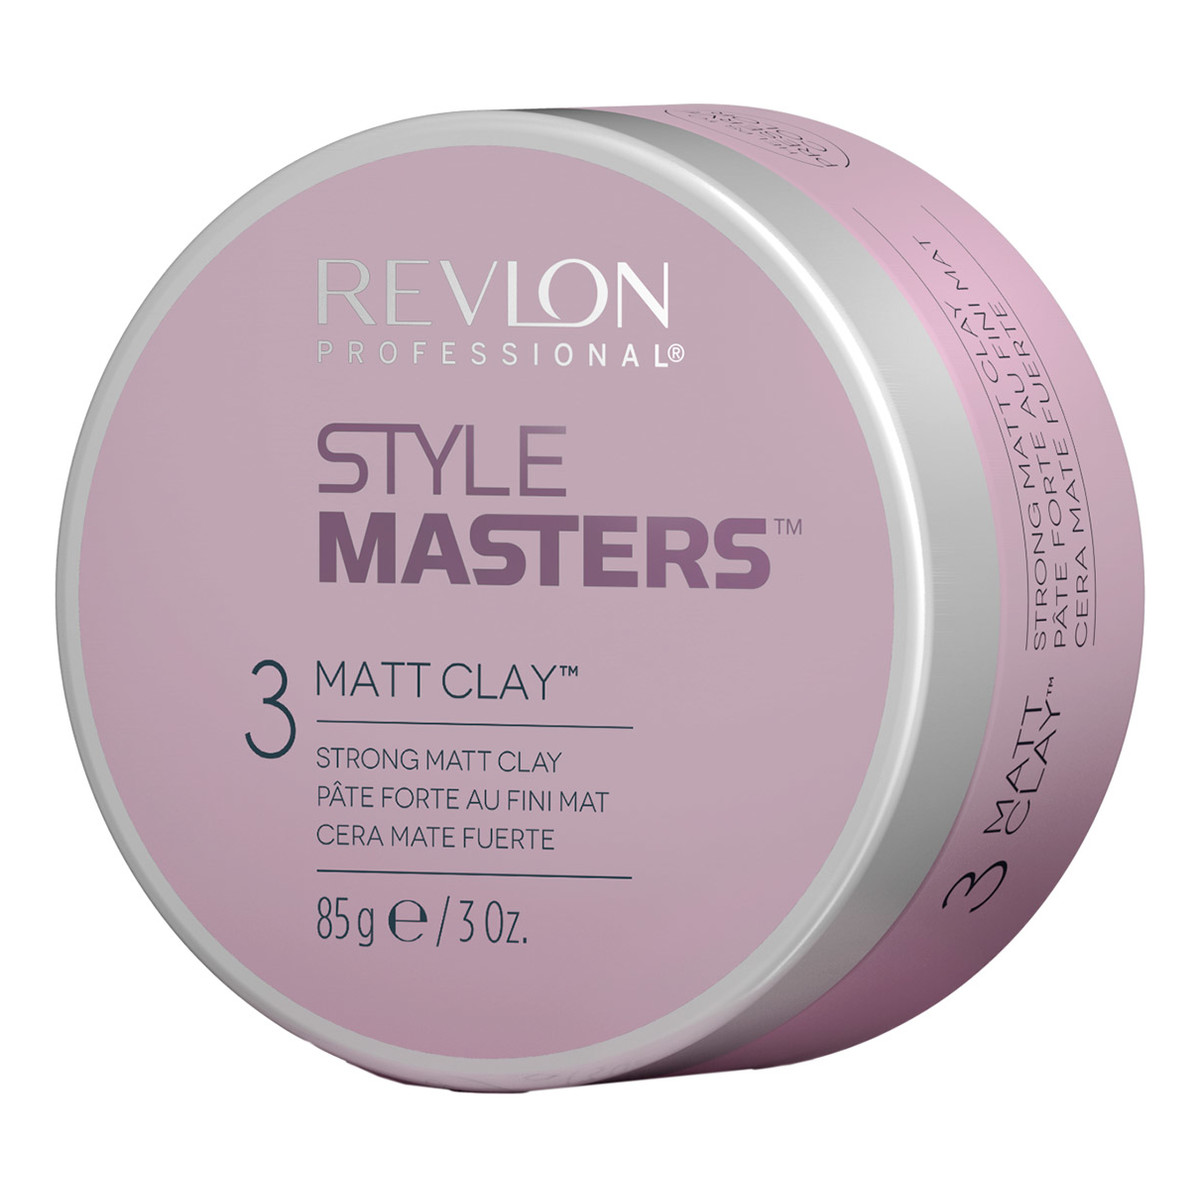 Revlon Style Masters Matt Clay matowa glinka modelująca włosy 85g